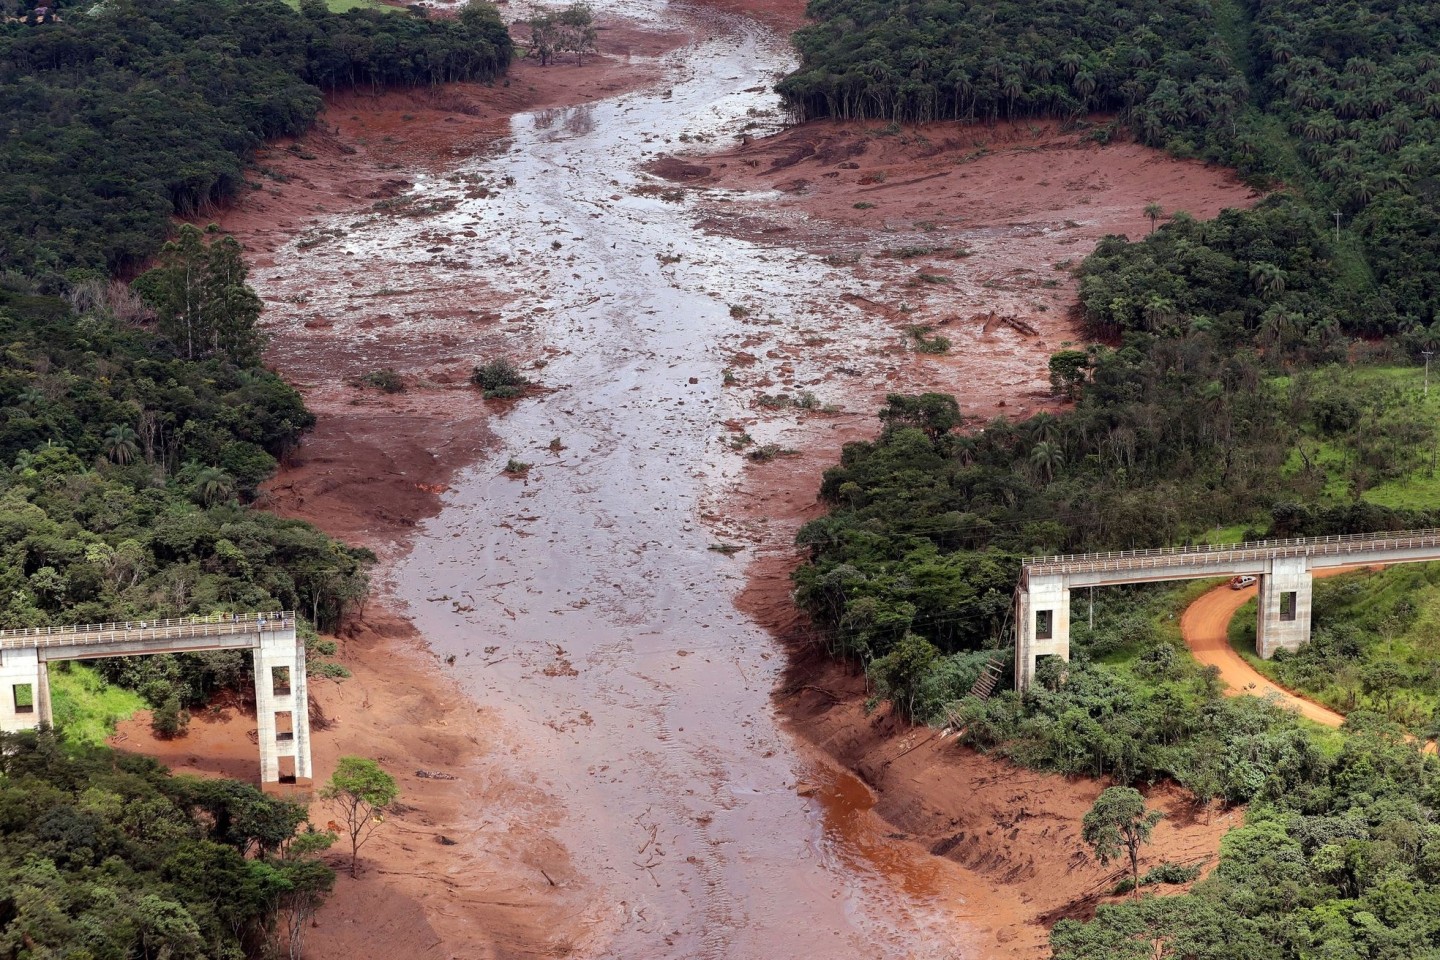 Die Luftaufnahme aus dem Januar 2019 zeigt eine zerstörte Brücke nach dem Dammbruch an der Eisenerzmine Corrego do Feijao. Die Schlammlawine begrub Menschen, Häuser und Tiere unter sich.